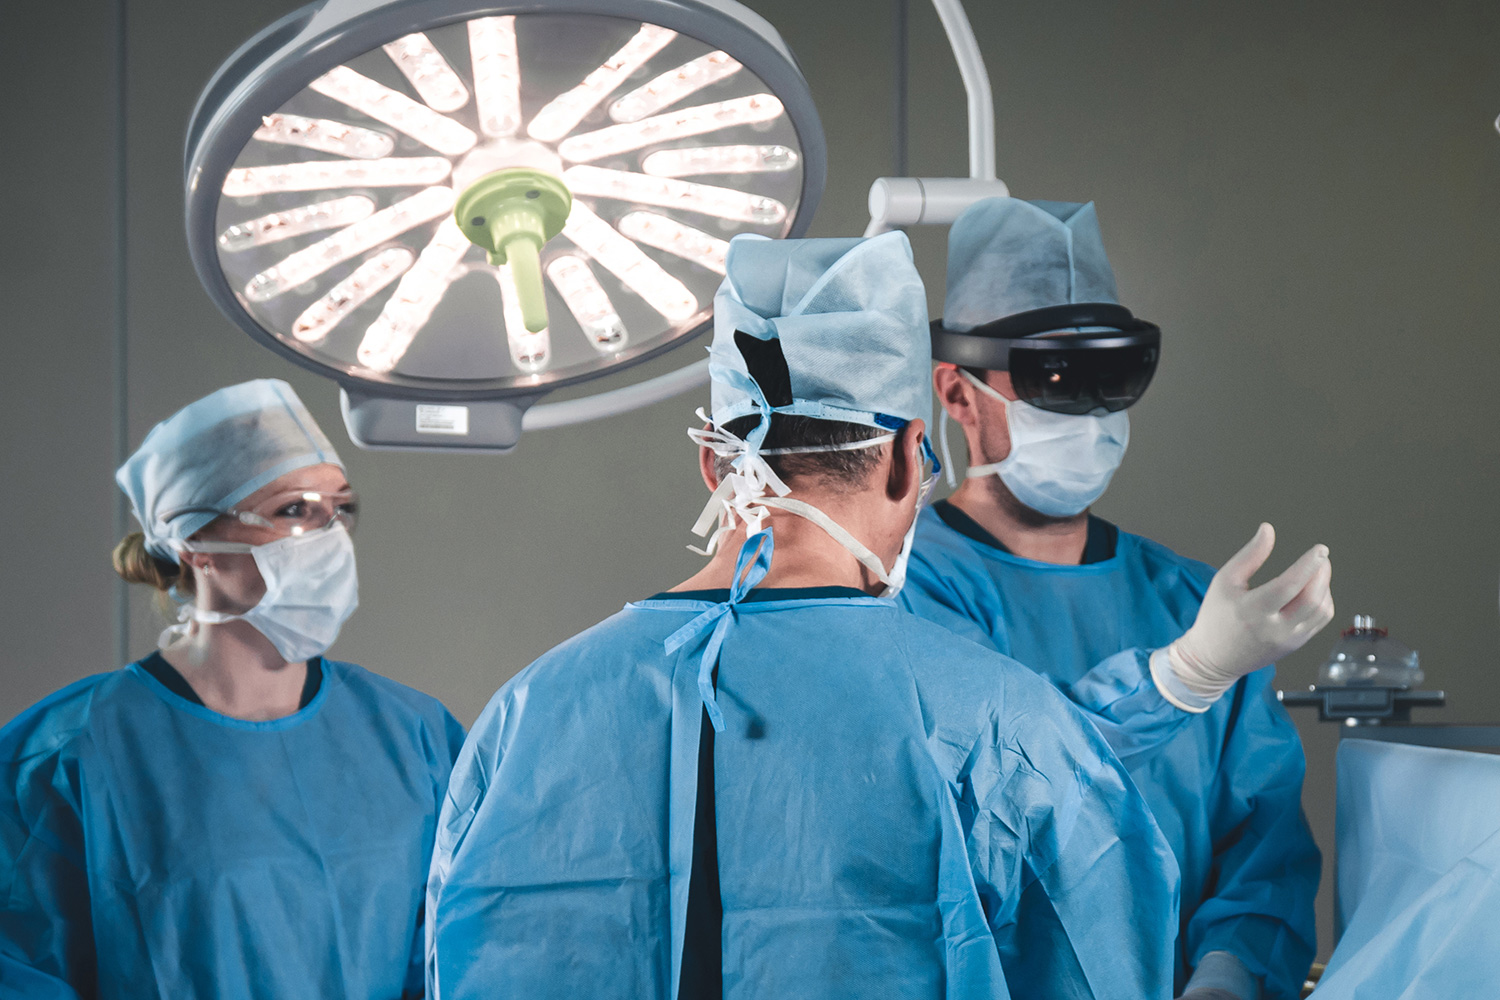 Chirurginnen und Chirurgen nutzen die Augmented Reality Technologie im Operationssaal.